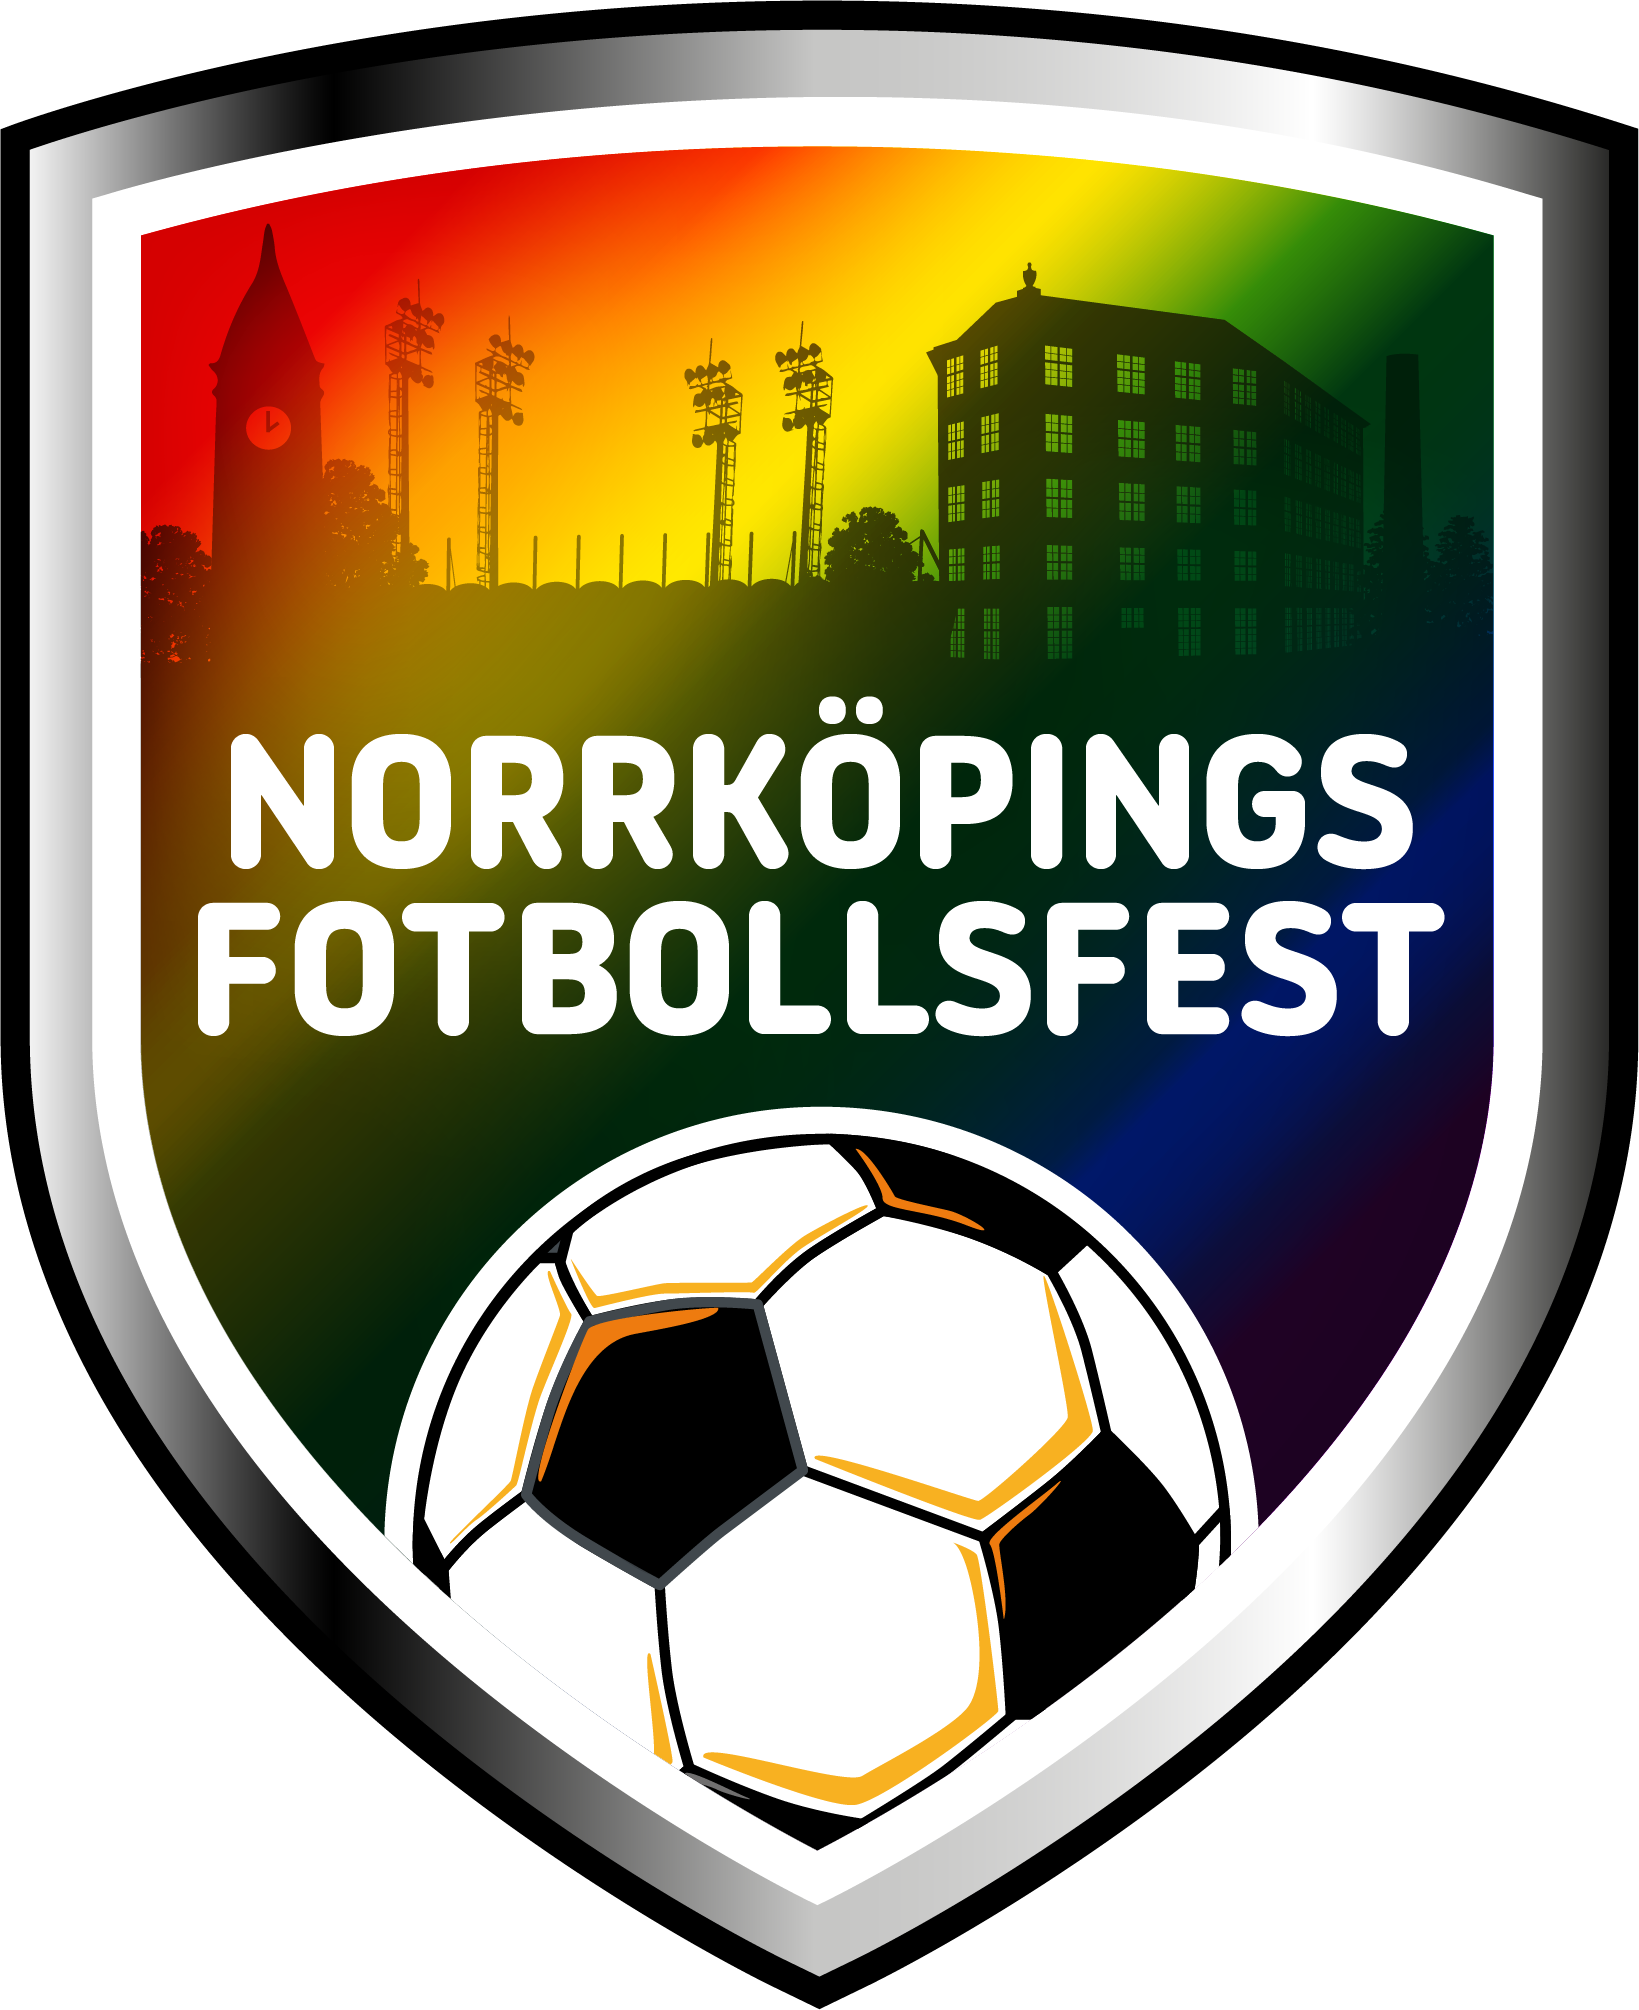 Norrköpings fotbollsfest